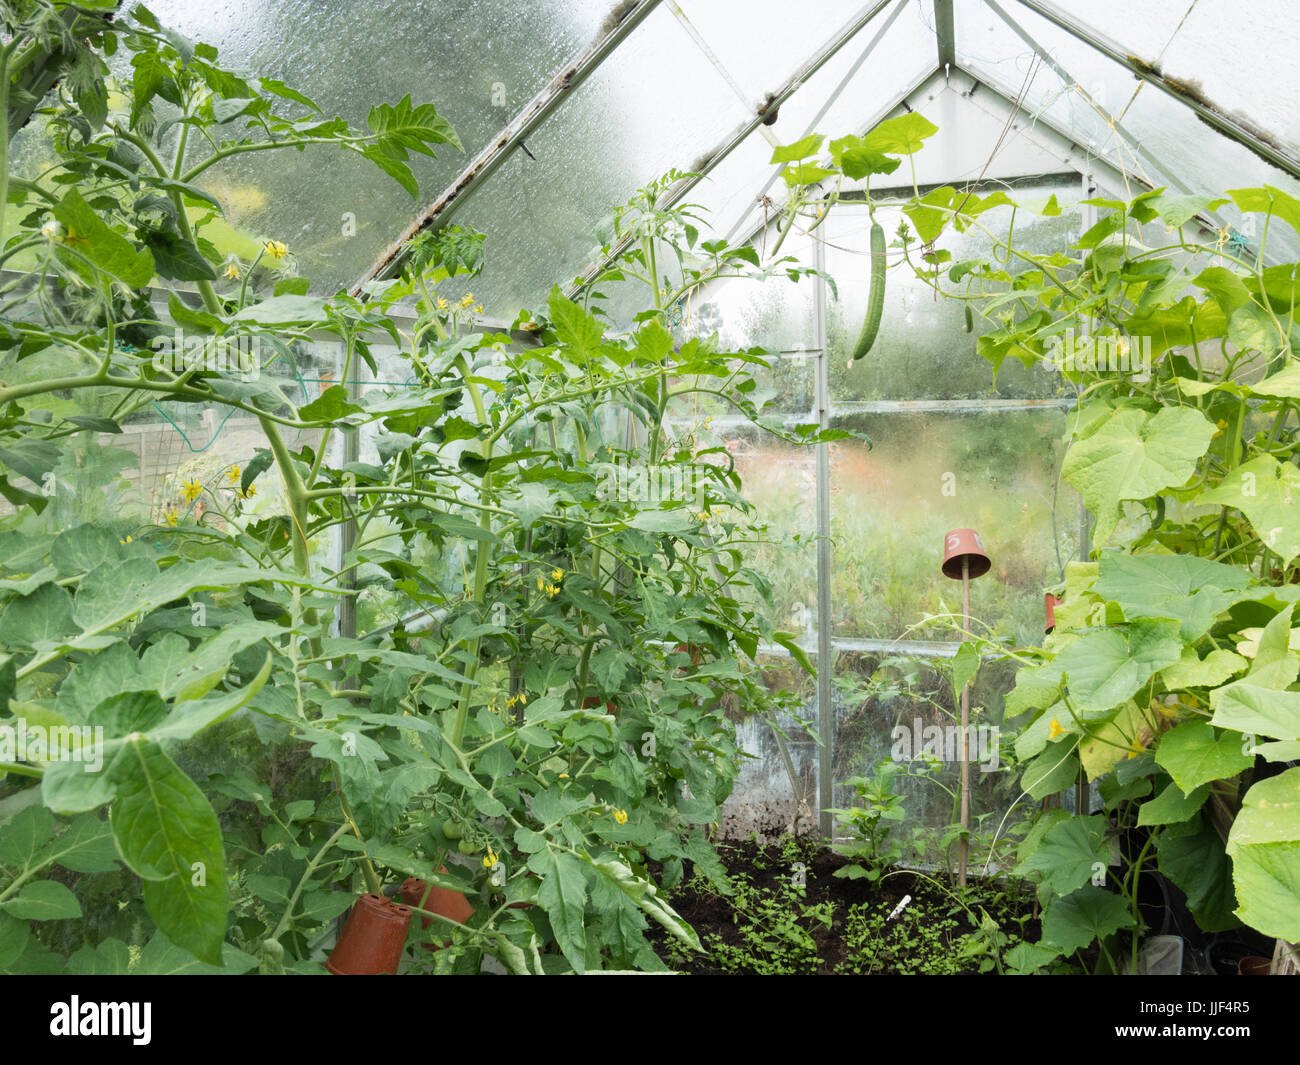 Gurken und Tomaten Pflanzen wachsen in einem inländischen oder zu Hause  Garten Gewächshaus Stockfotografie - Alamy